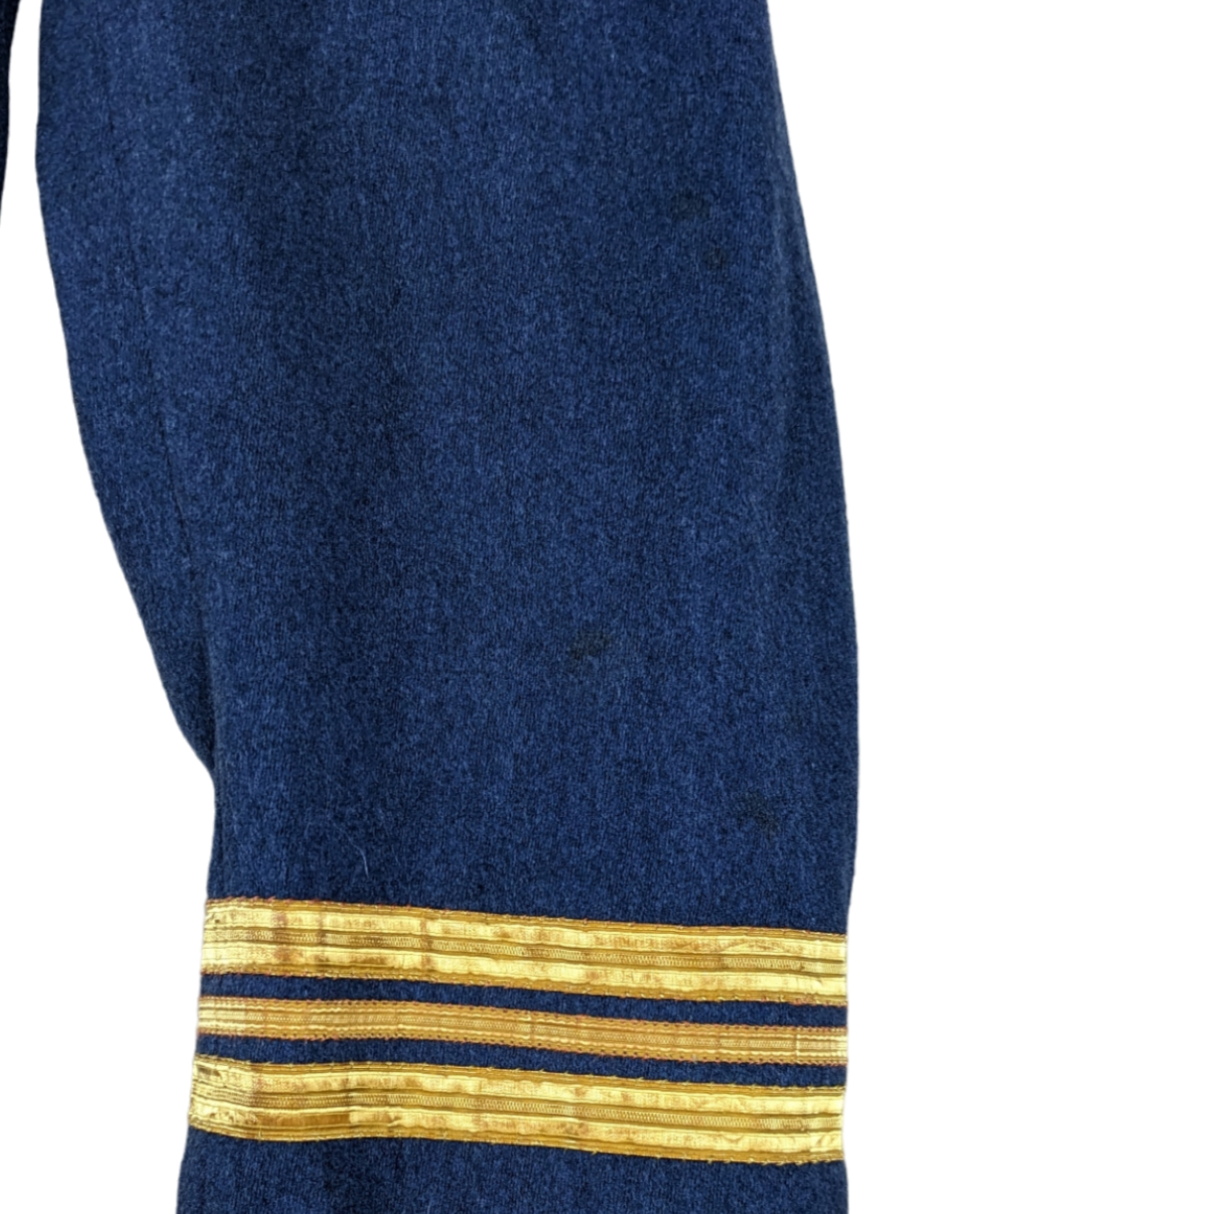 British Royal Air Force RAF No. 5 Mess Dress Jacket - Squadron Leader - 1970s